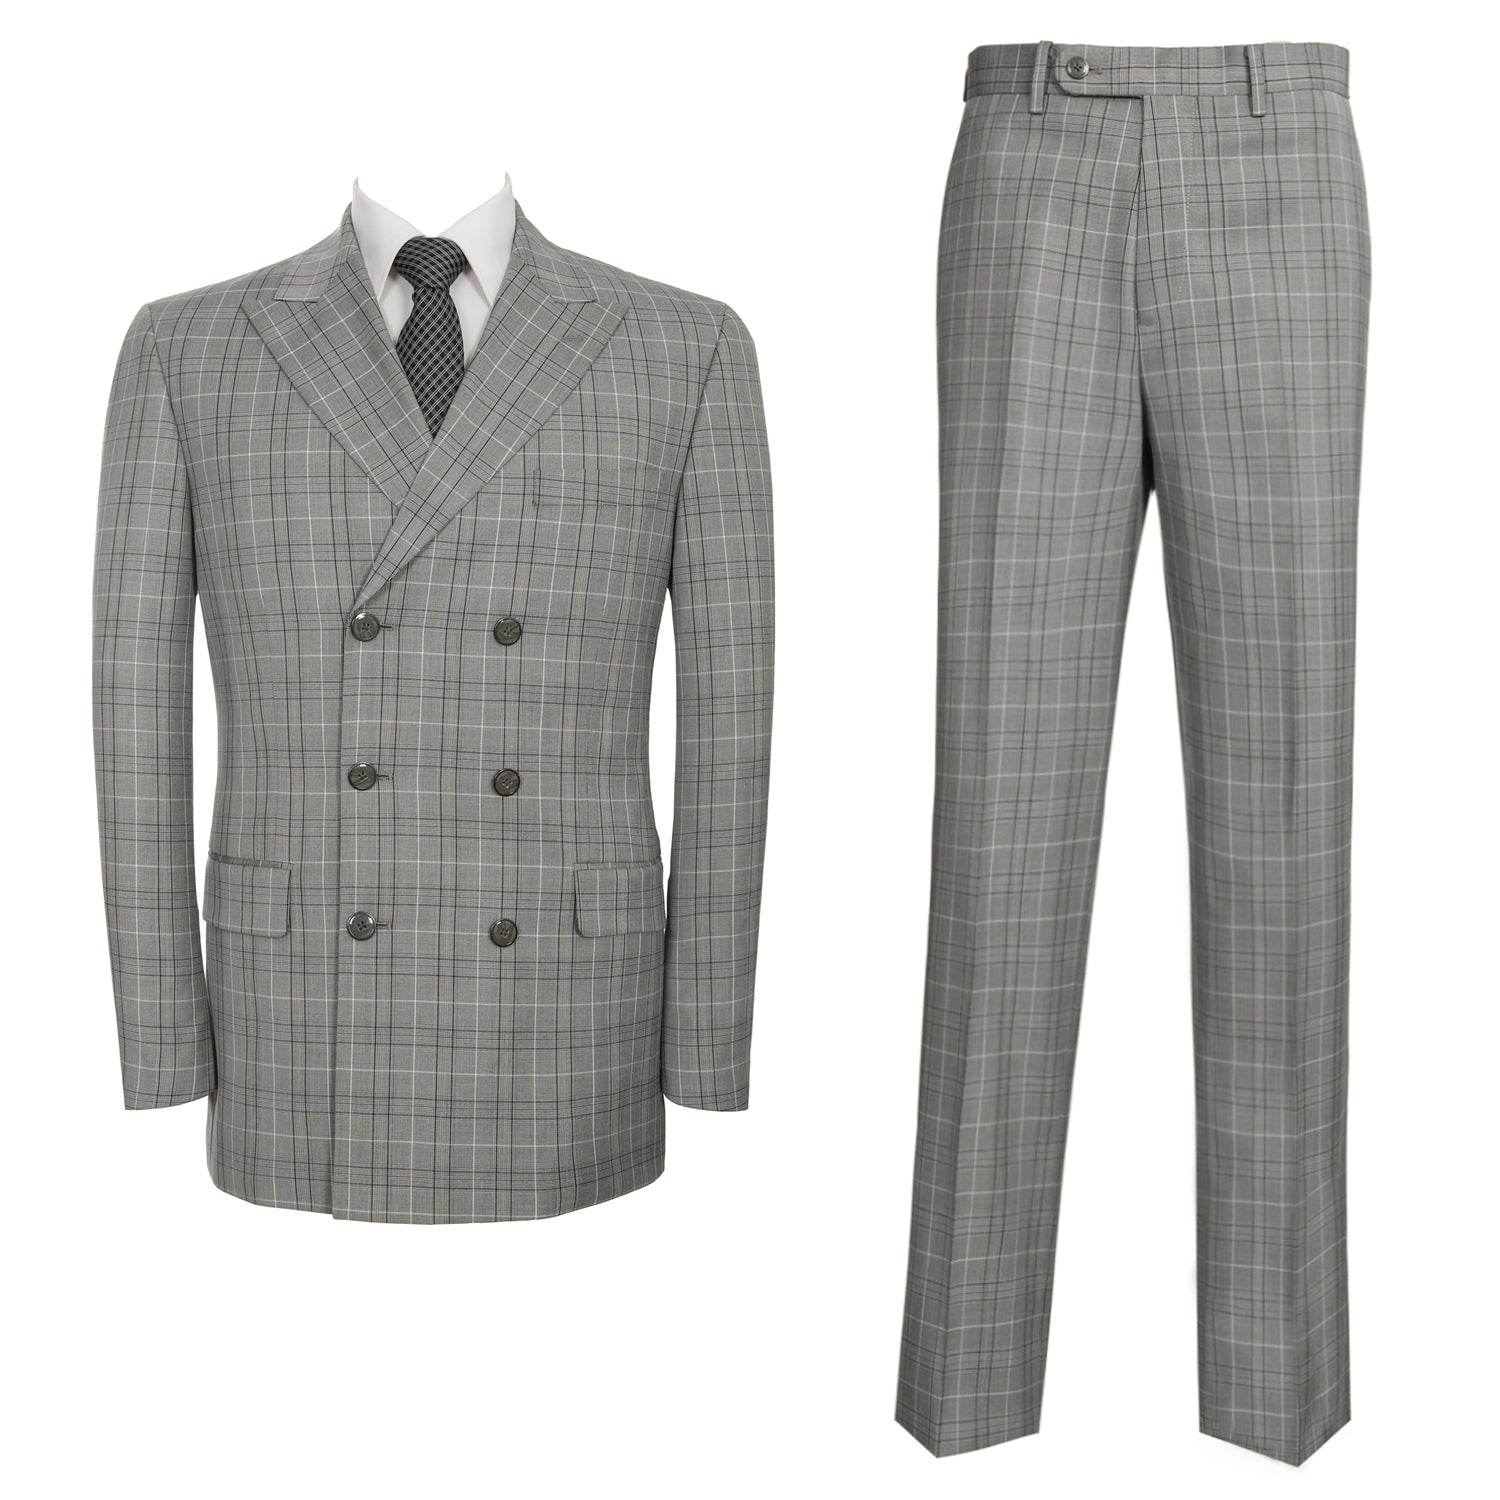 P&L Men's 2-Piece Classic Fit Double Breasted Peak Lapel Plaid Suit